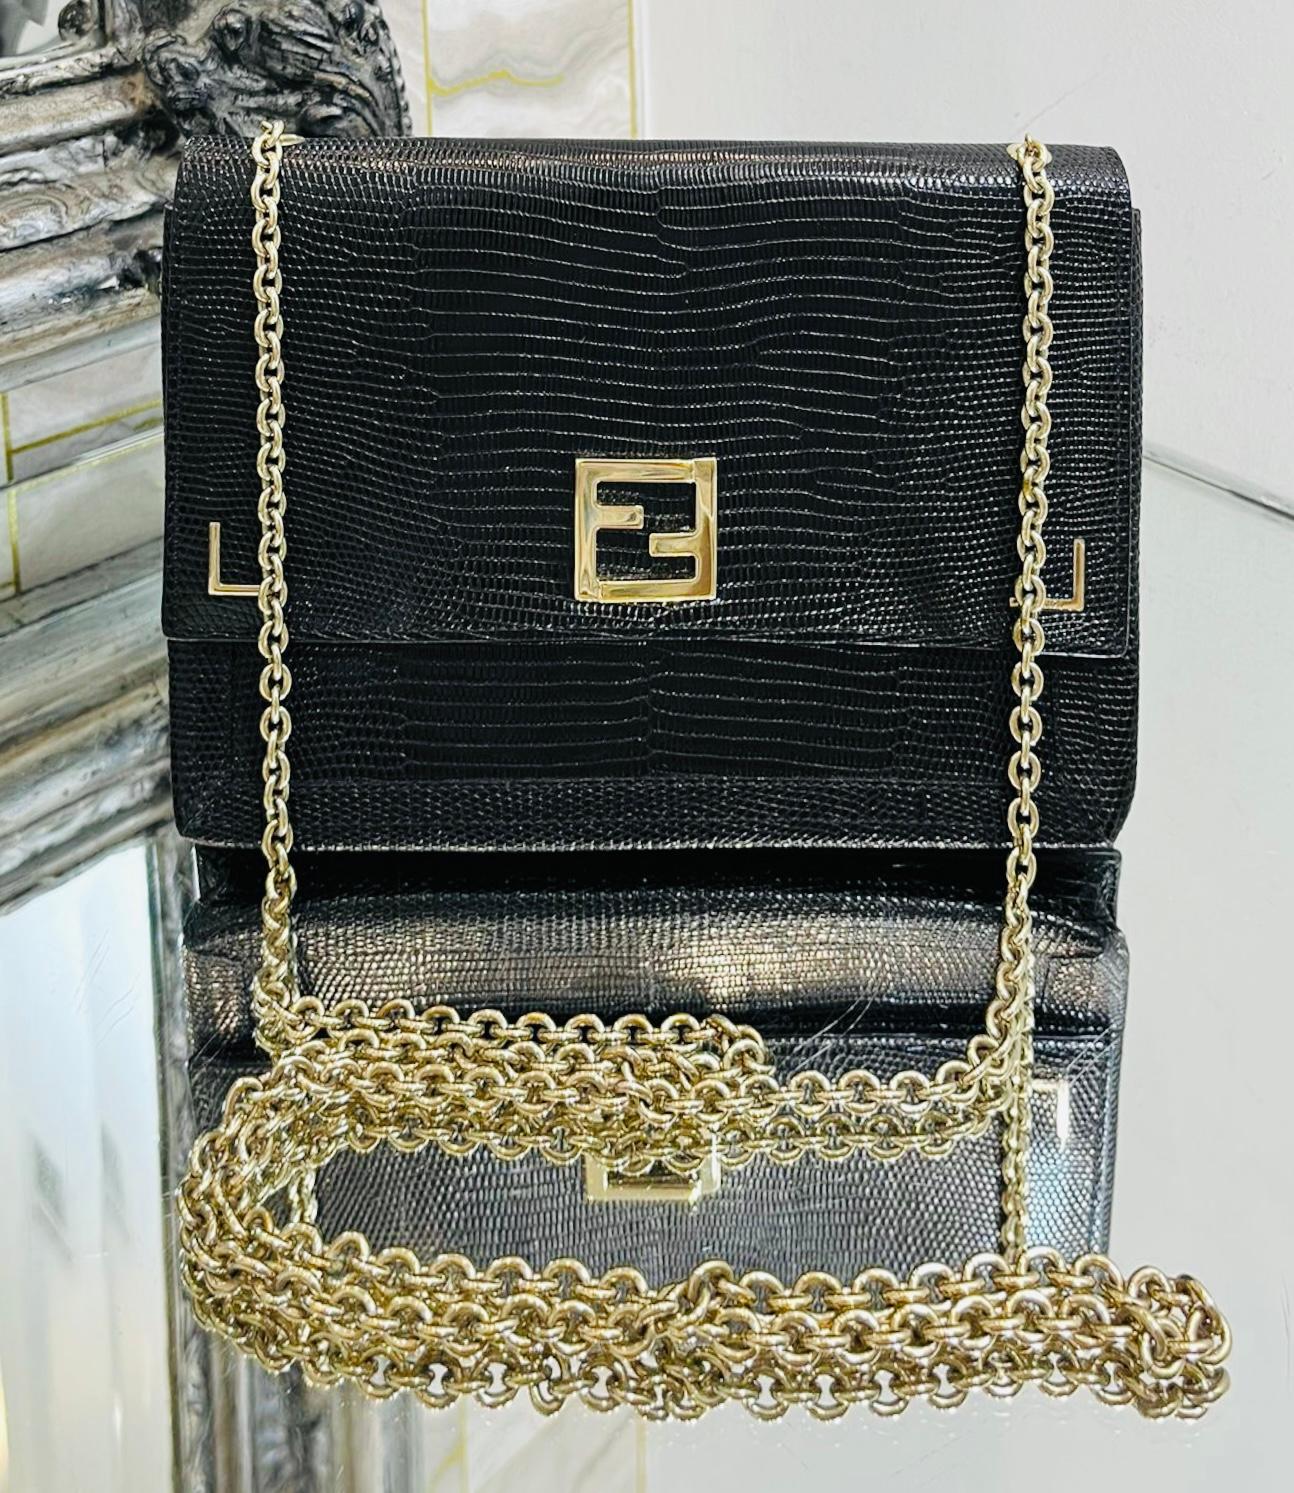 Fendi Portemonnaie/Tasche aus Leder mit Eidechsenprägung an Kette

Schwarzes Portemonnaie mit Eidechsenprägung aus Leder.

Mit goldenem 